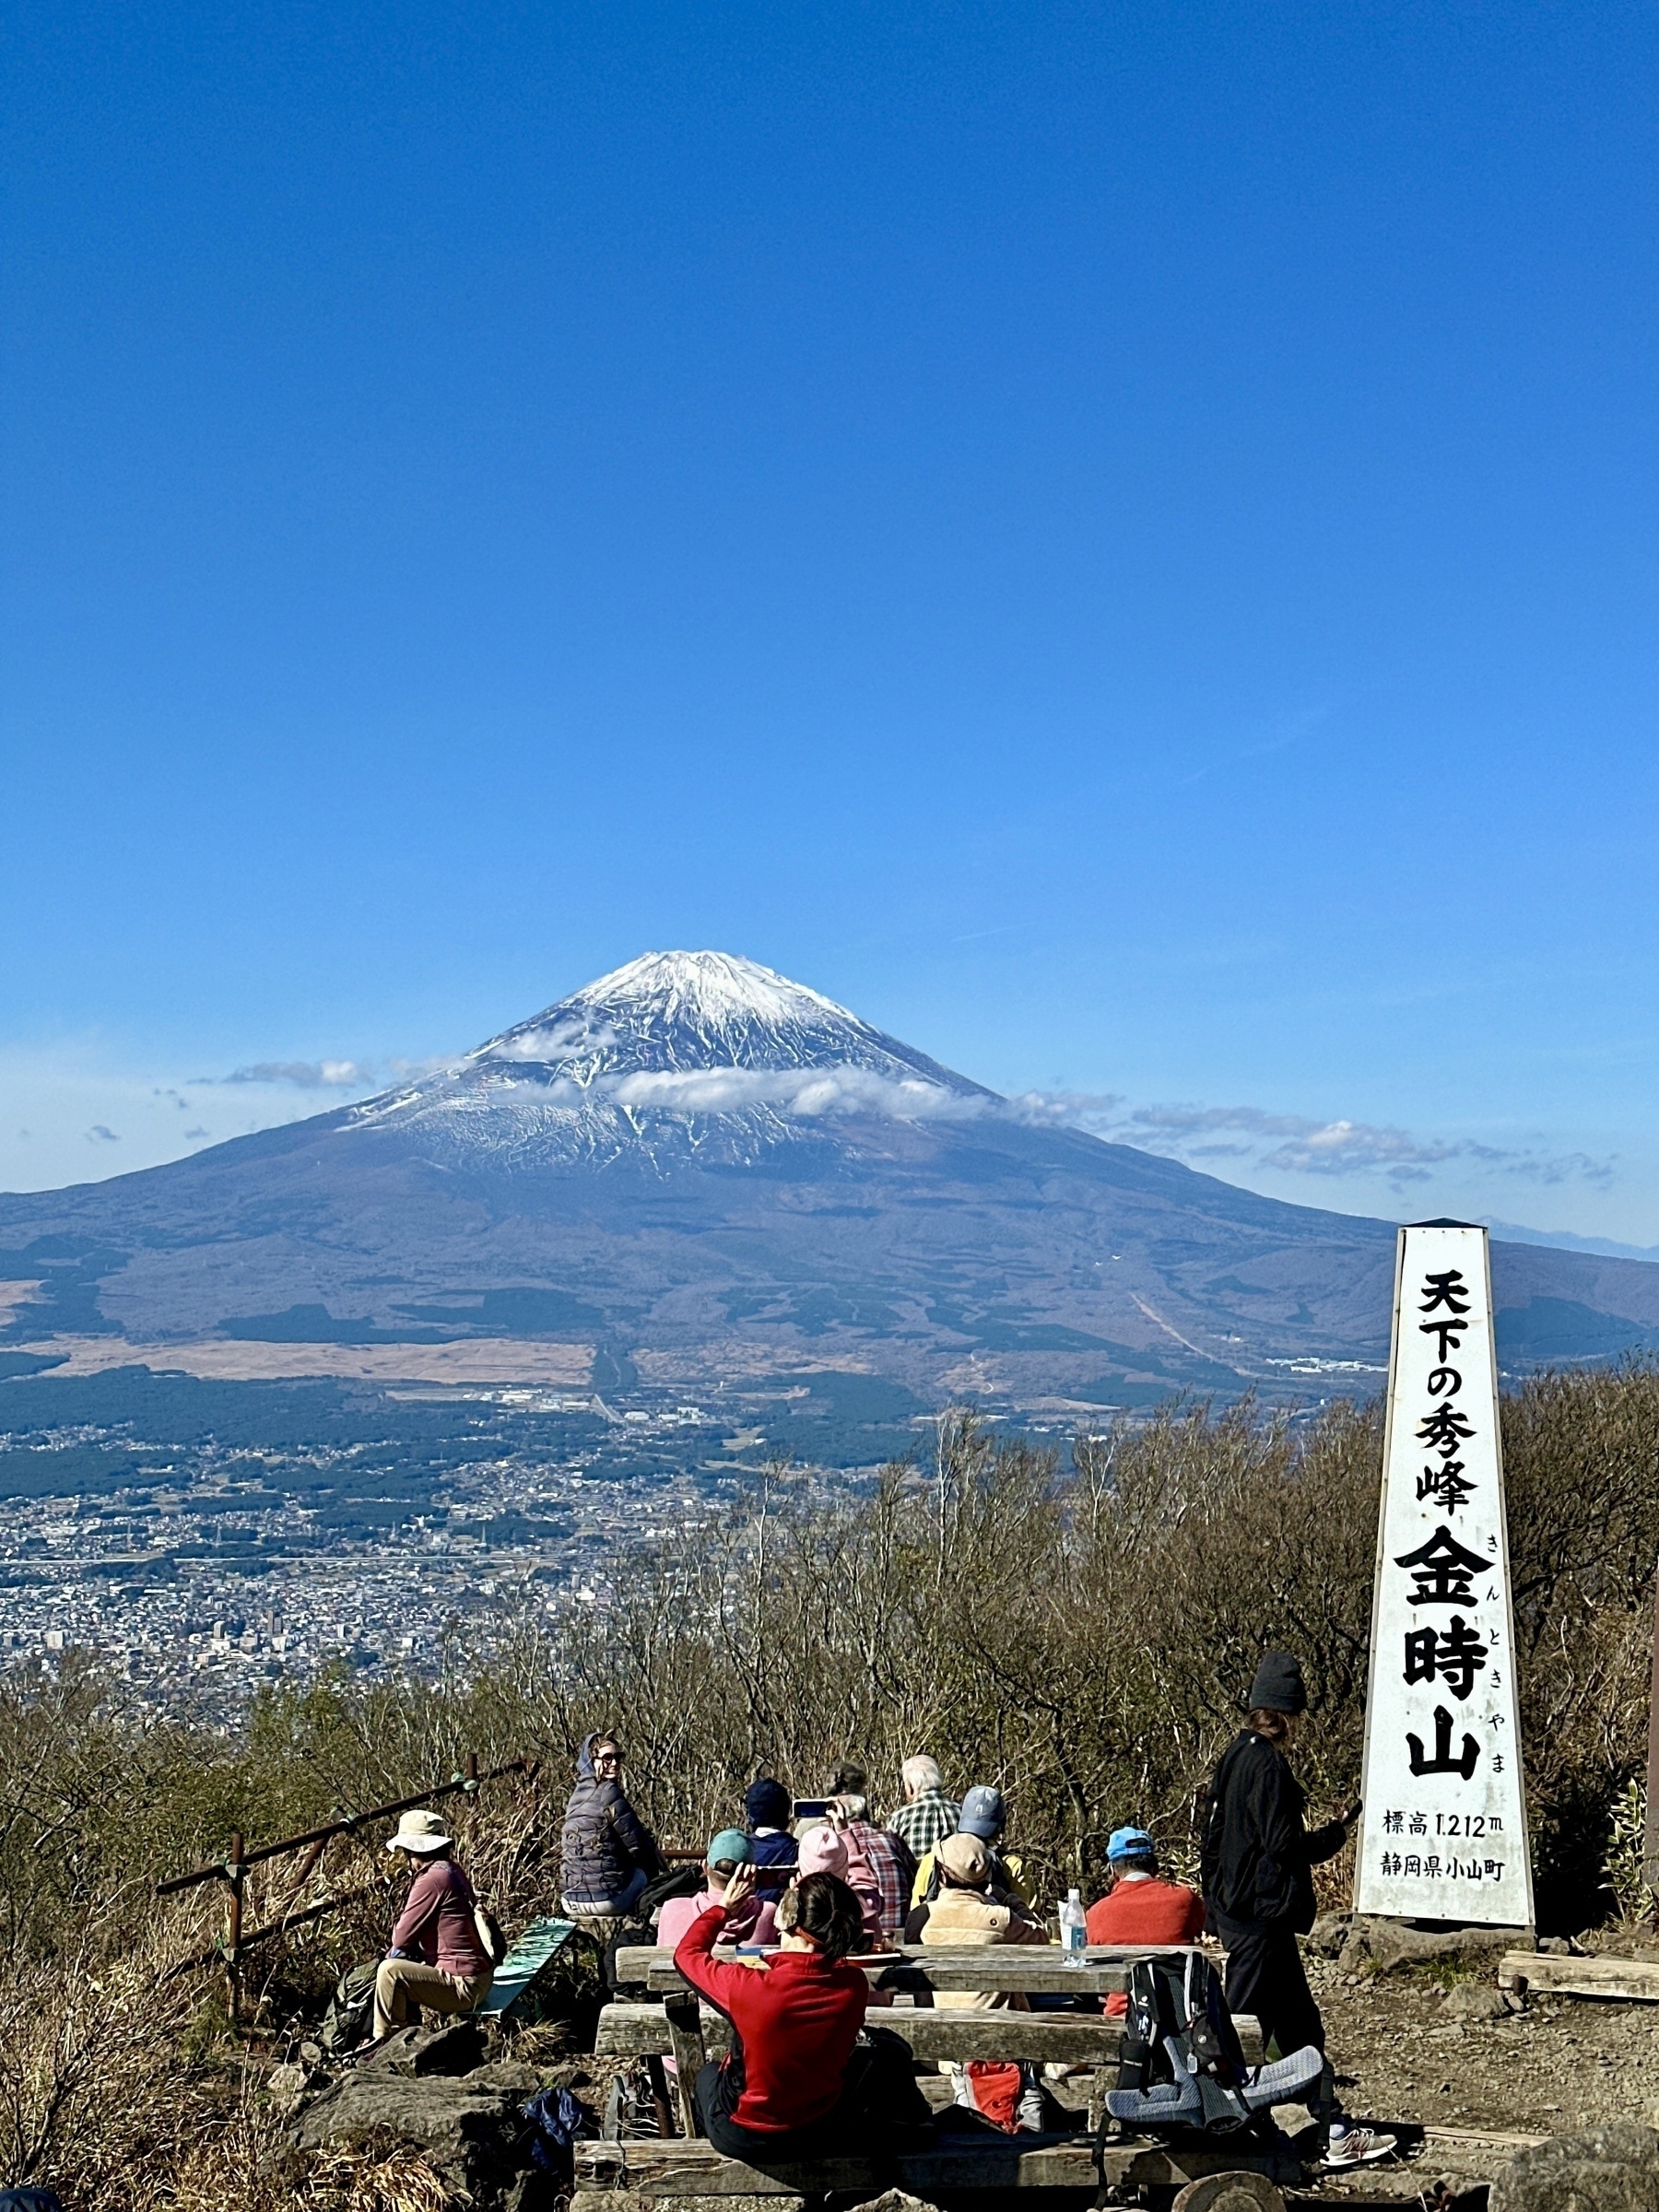 View of Mt Fuji from Mt Kintoki. 